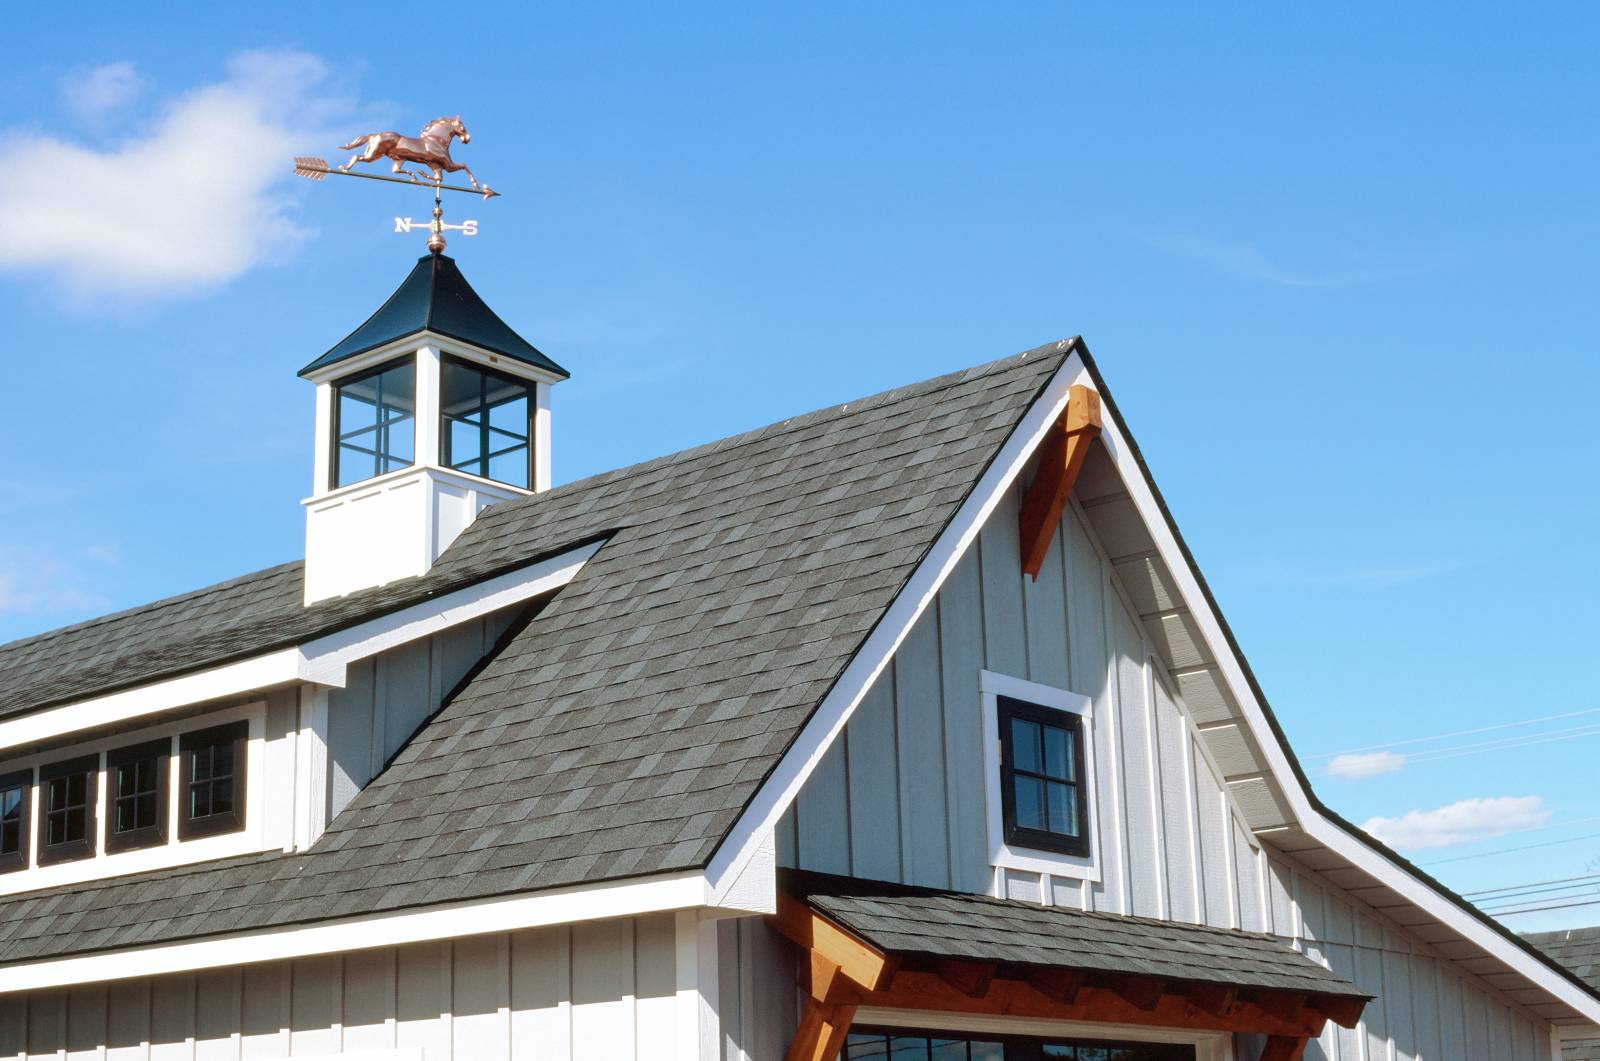 Farmhouse Cupola • Farmhouse Dormer • Timber Accents • Andersen Black Windows • Board & Batten Siding